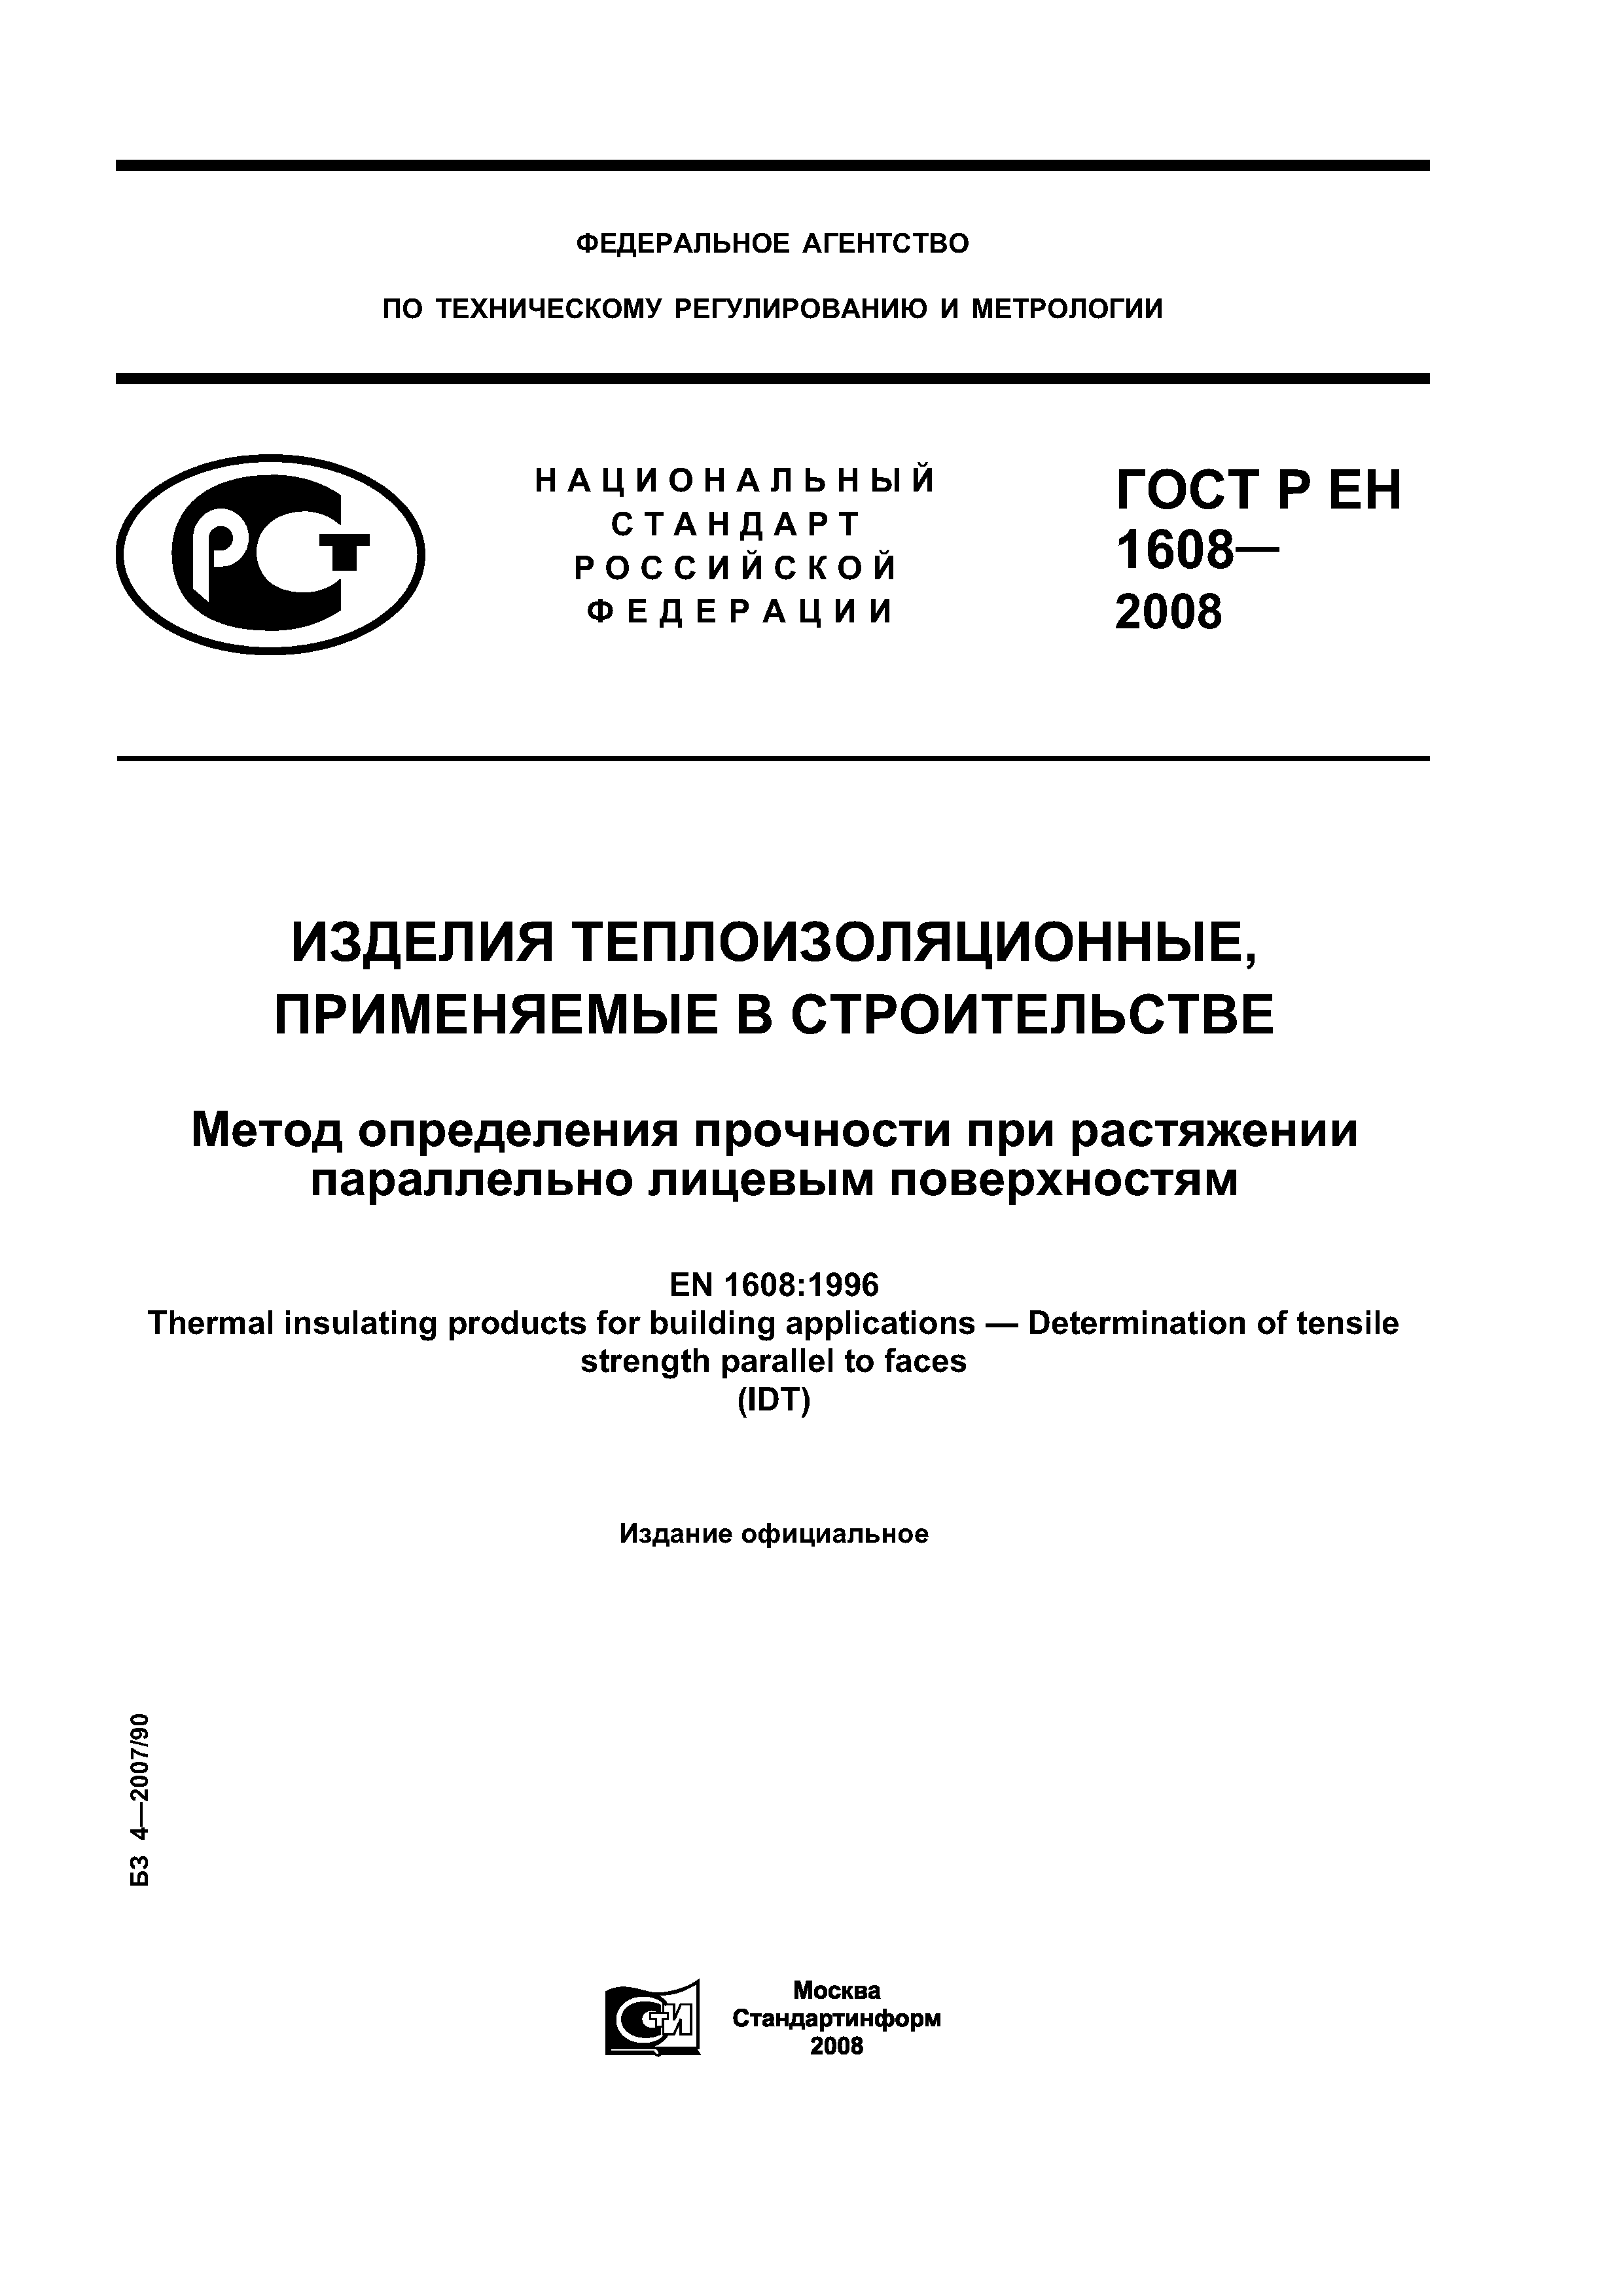 ГОСТ Р ЕН 1608-2008